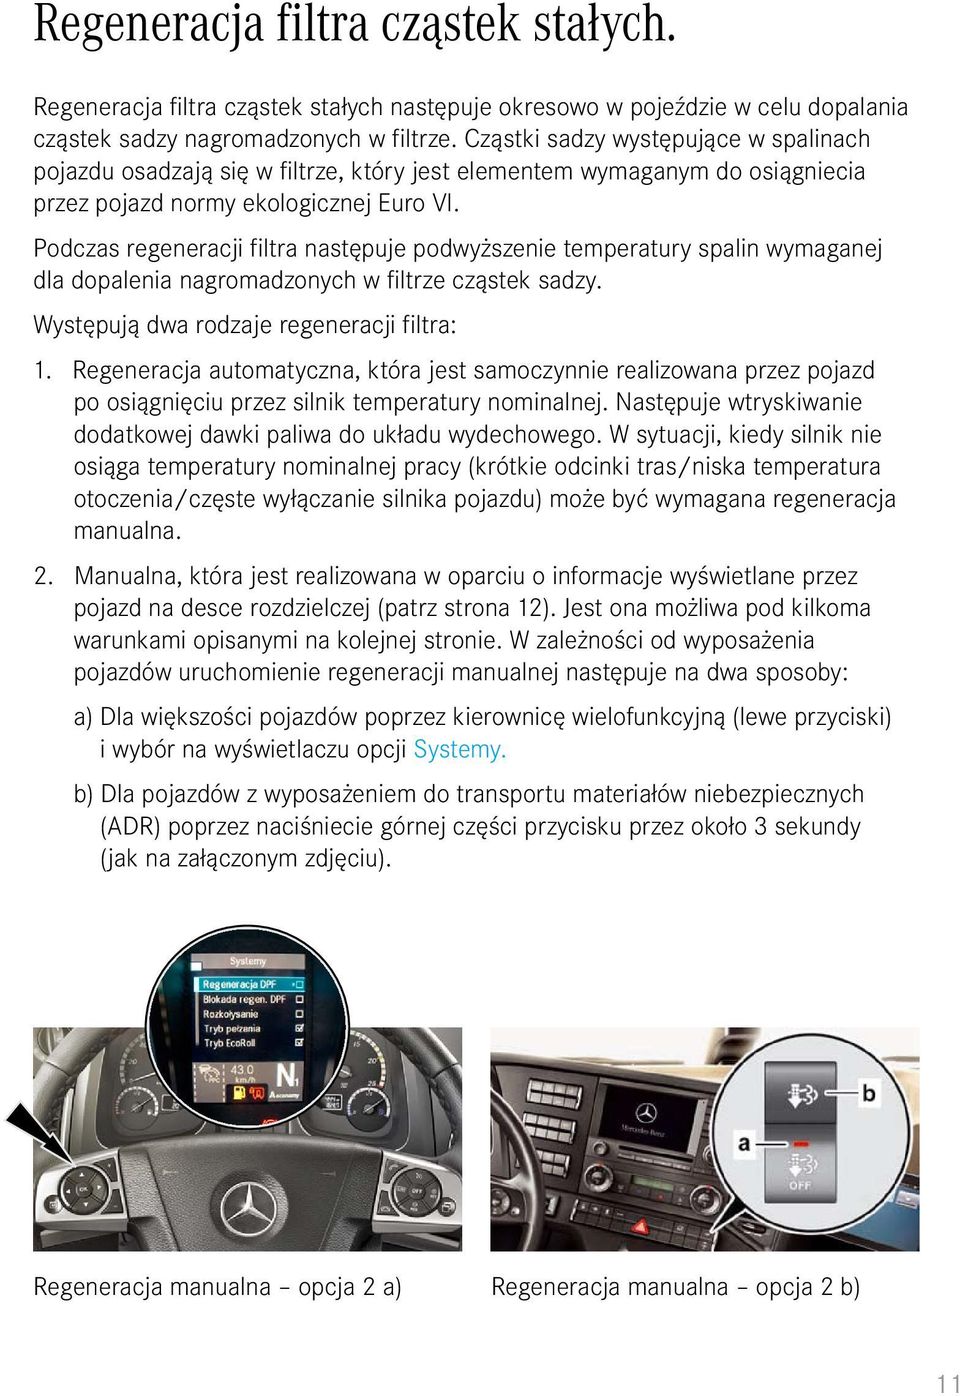 Skrócona instrukcja obsługi pojazdu Actros. - PDF Free Download